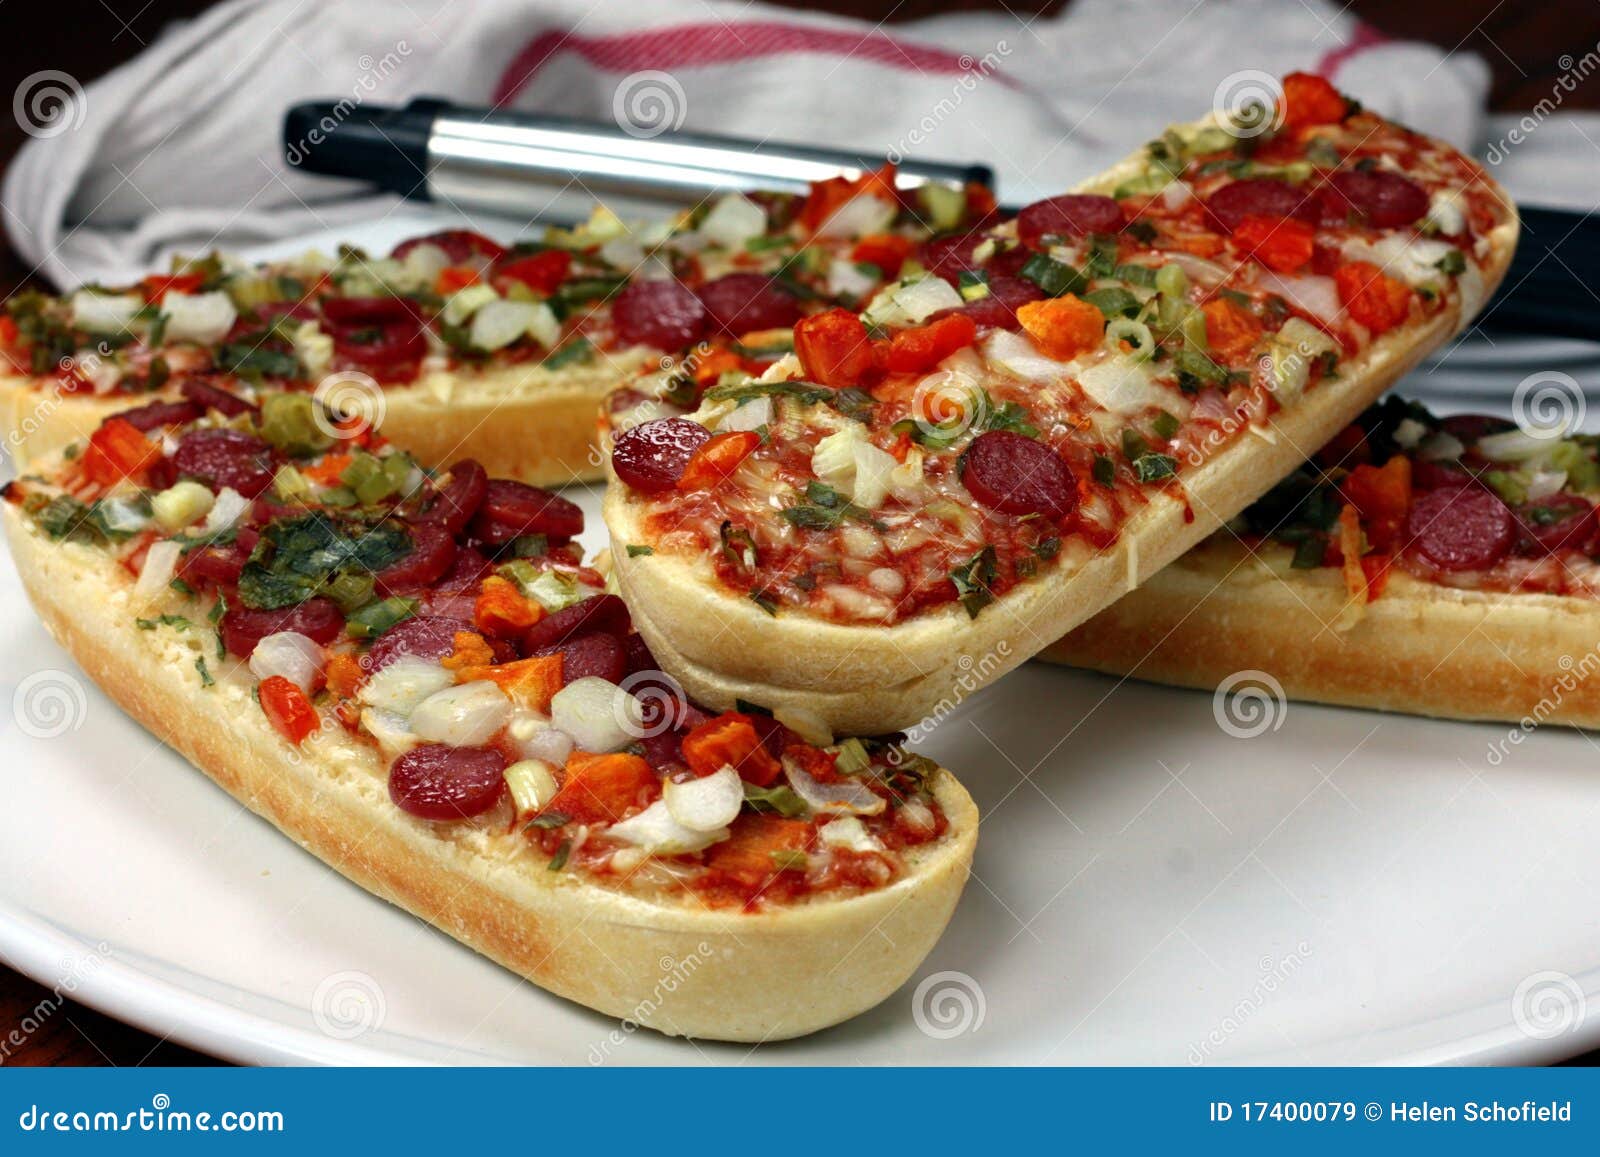 багет пицца в духовке фото 62